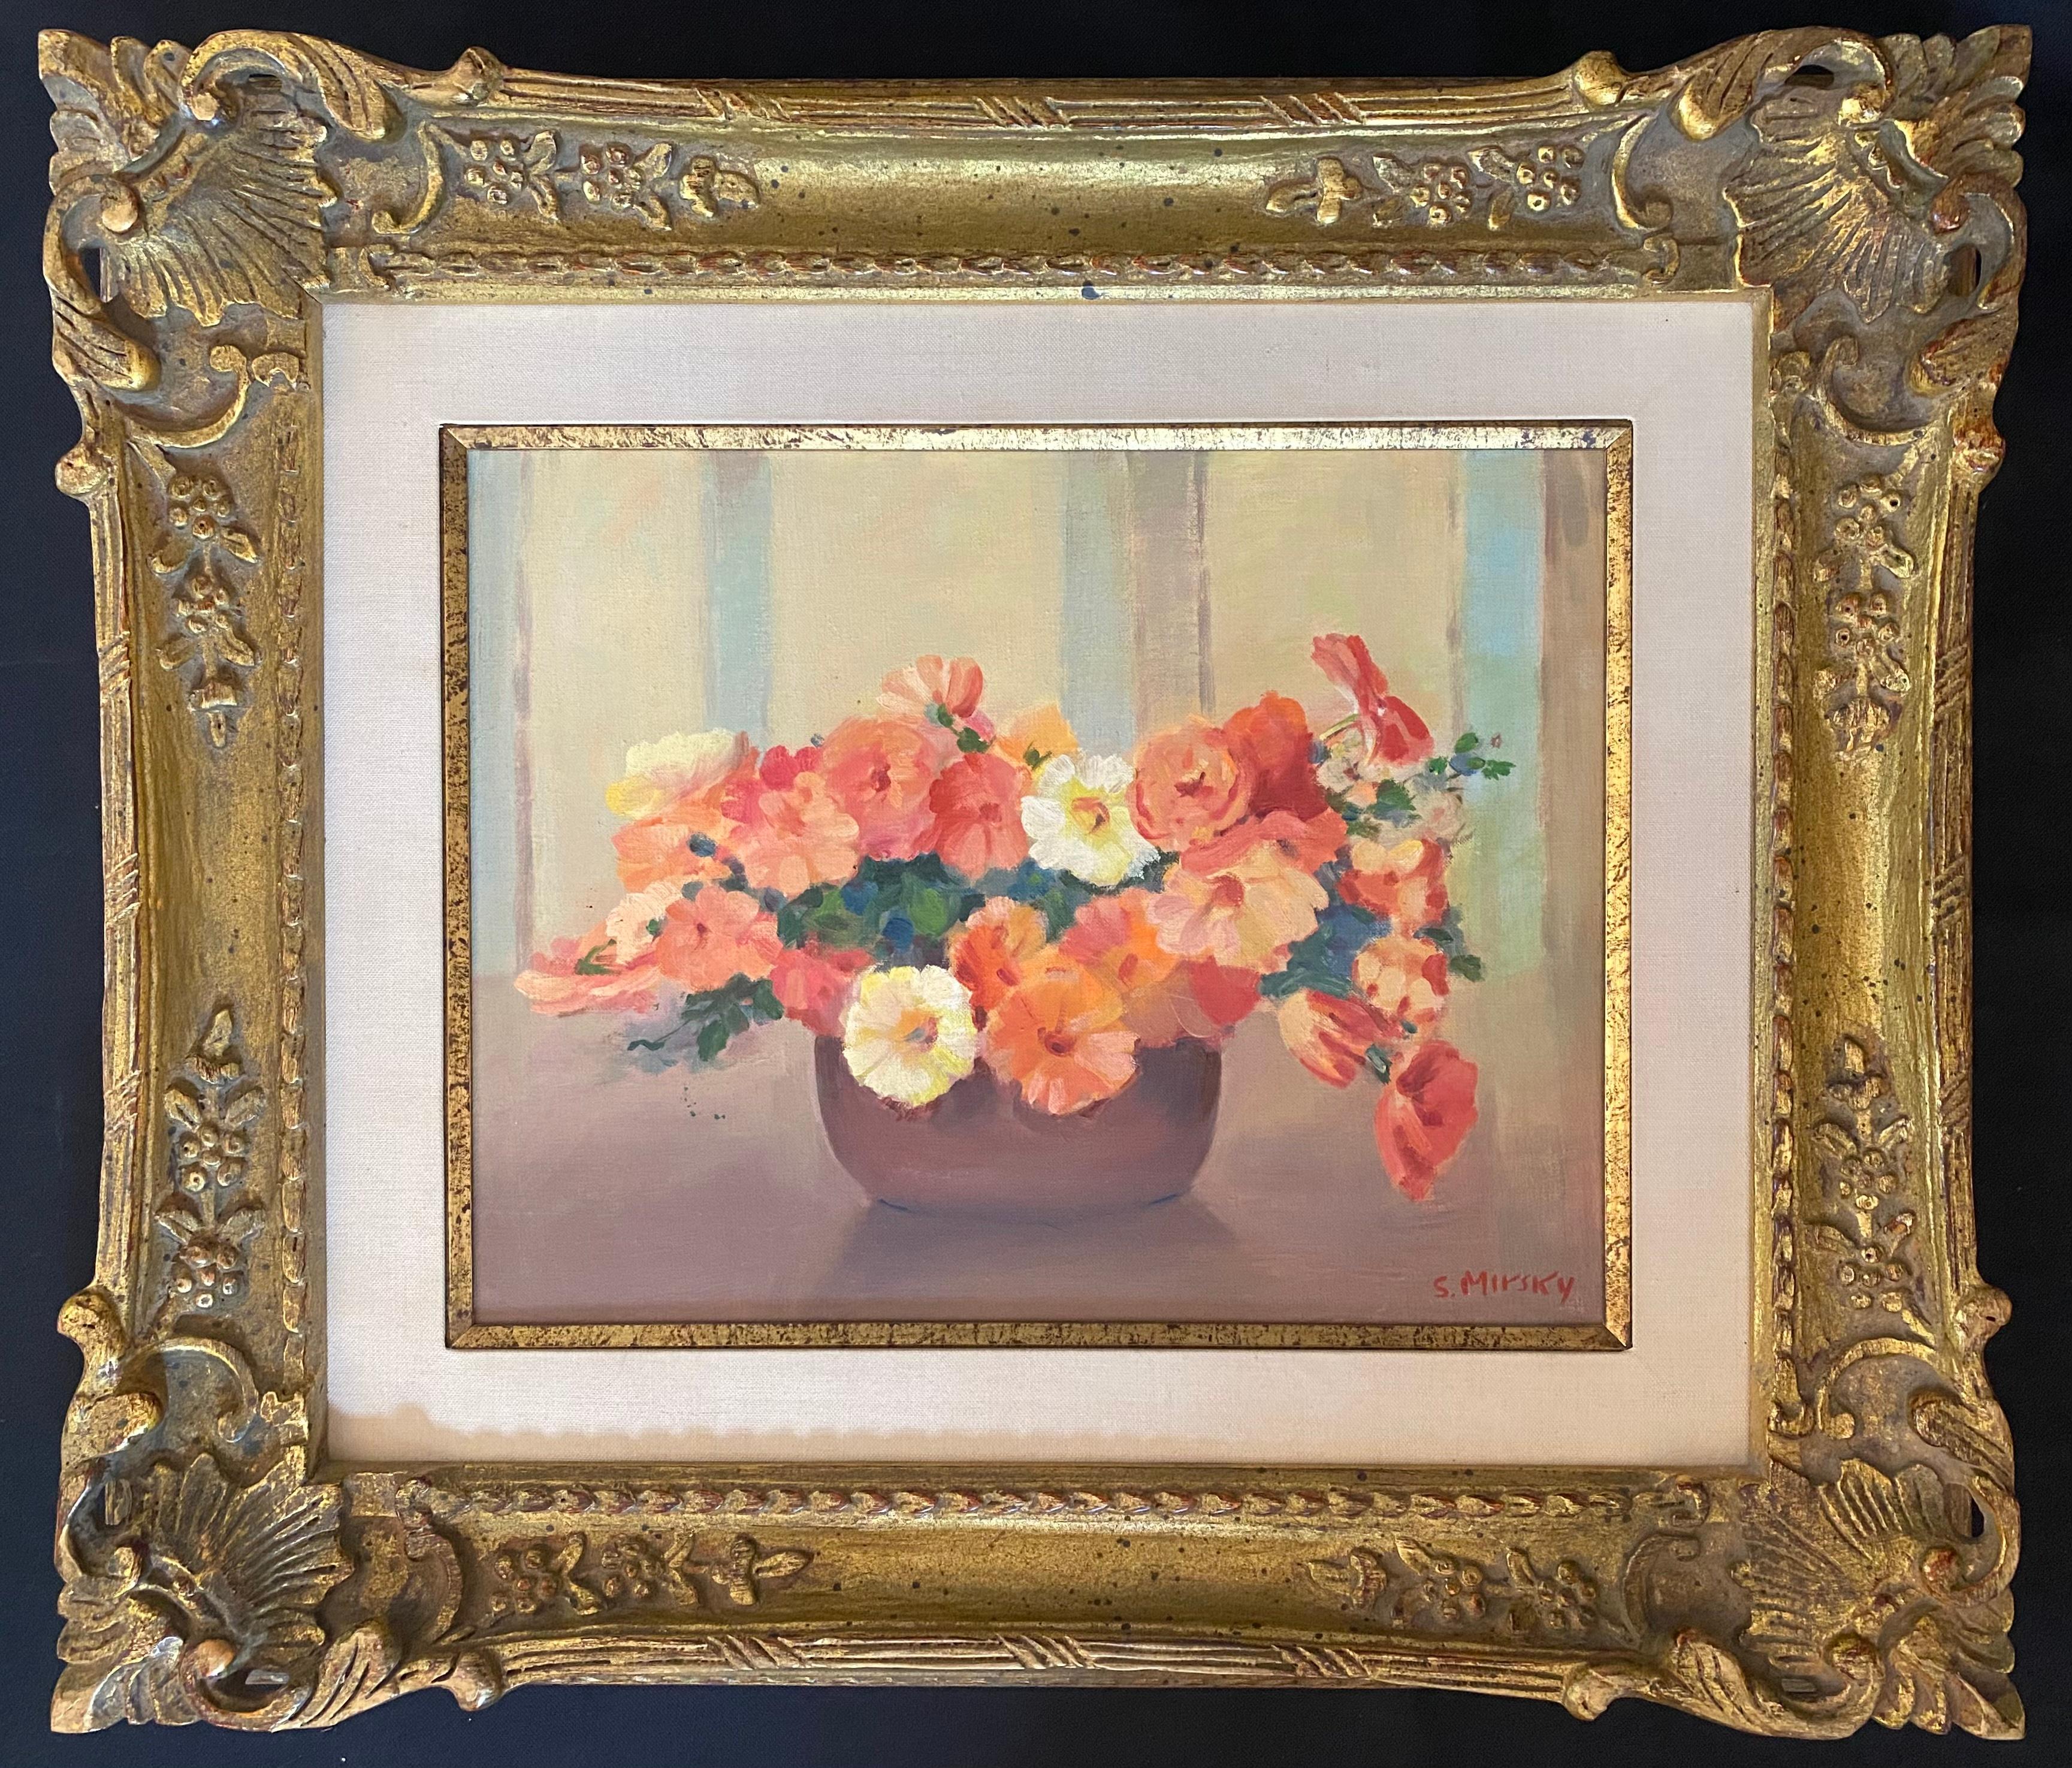 Blumenstrauß von Petunias – Painting von SAMUEL MIRSKY